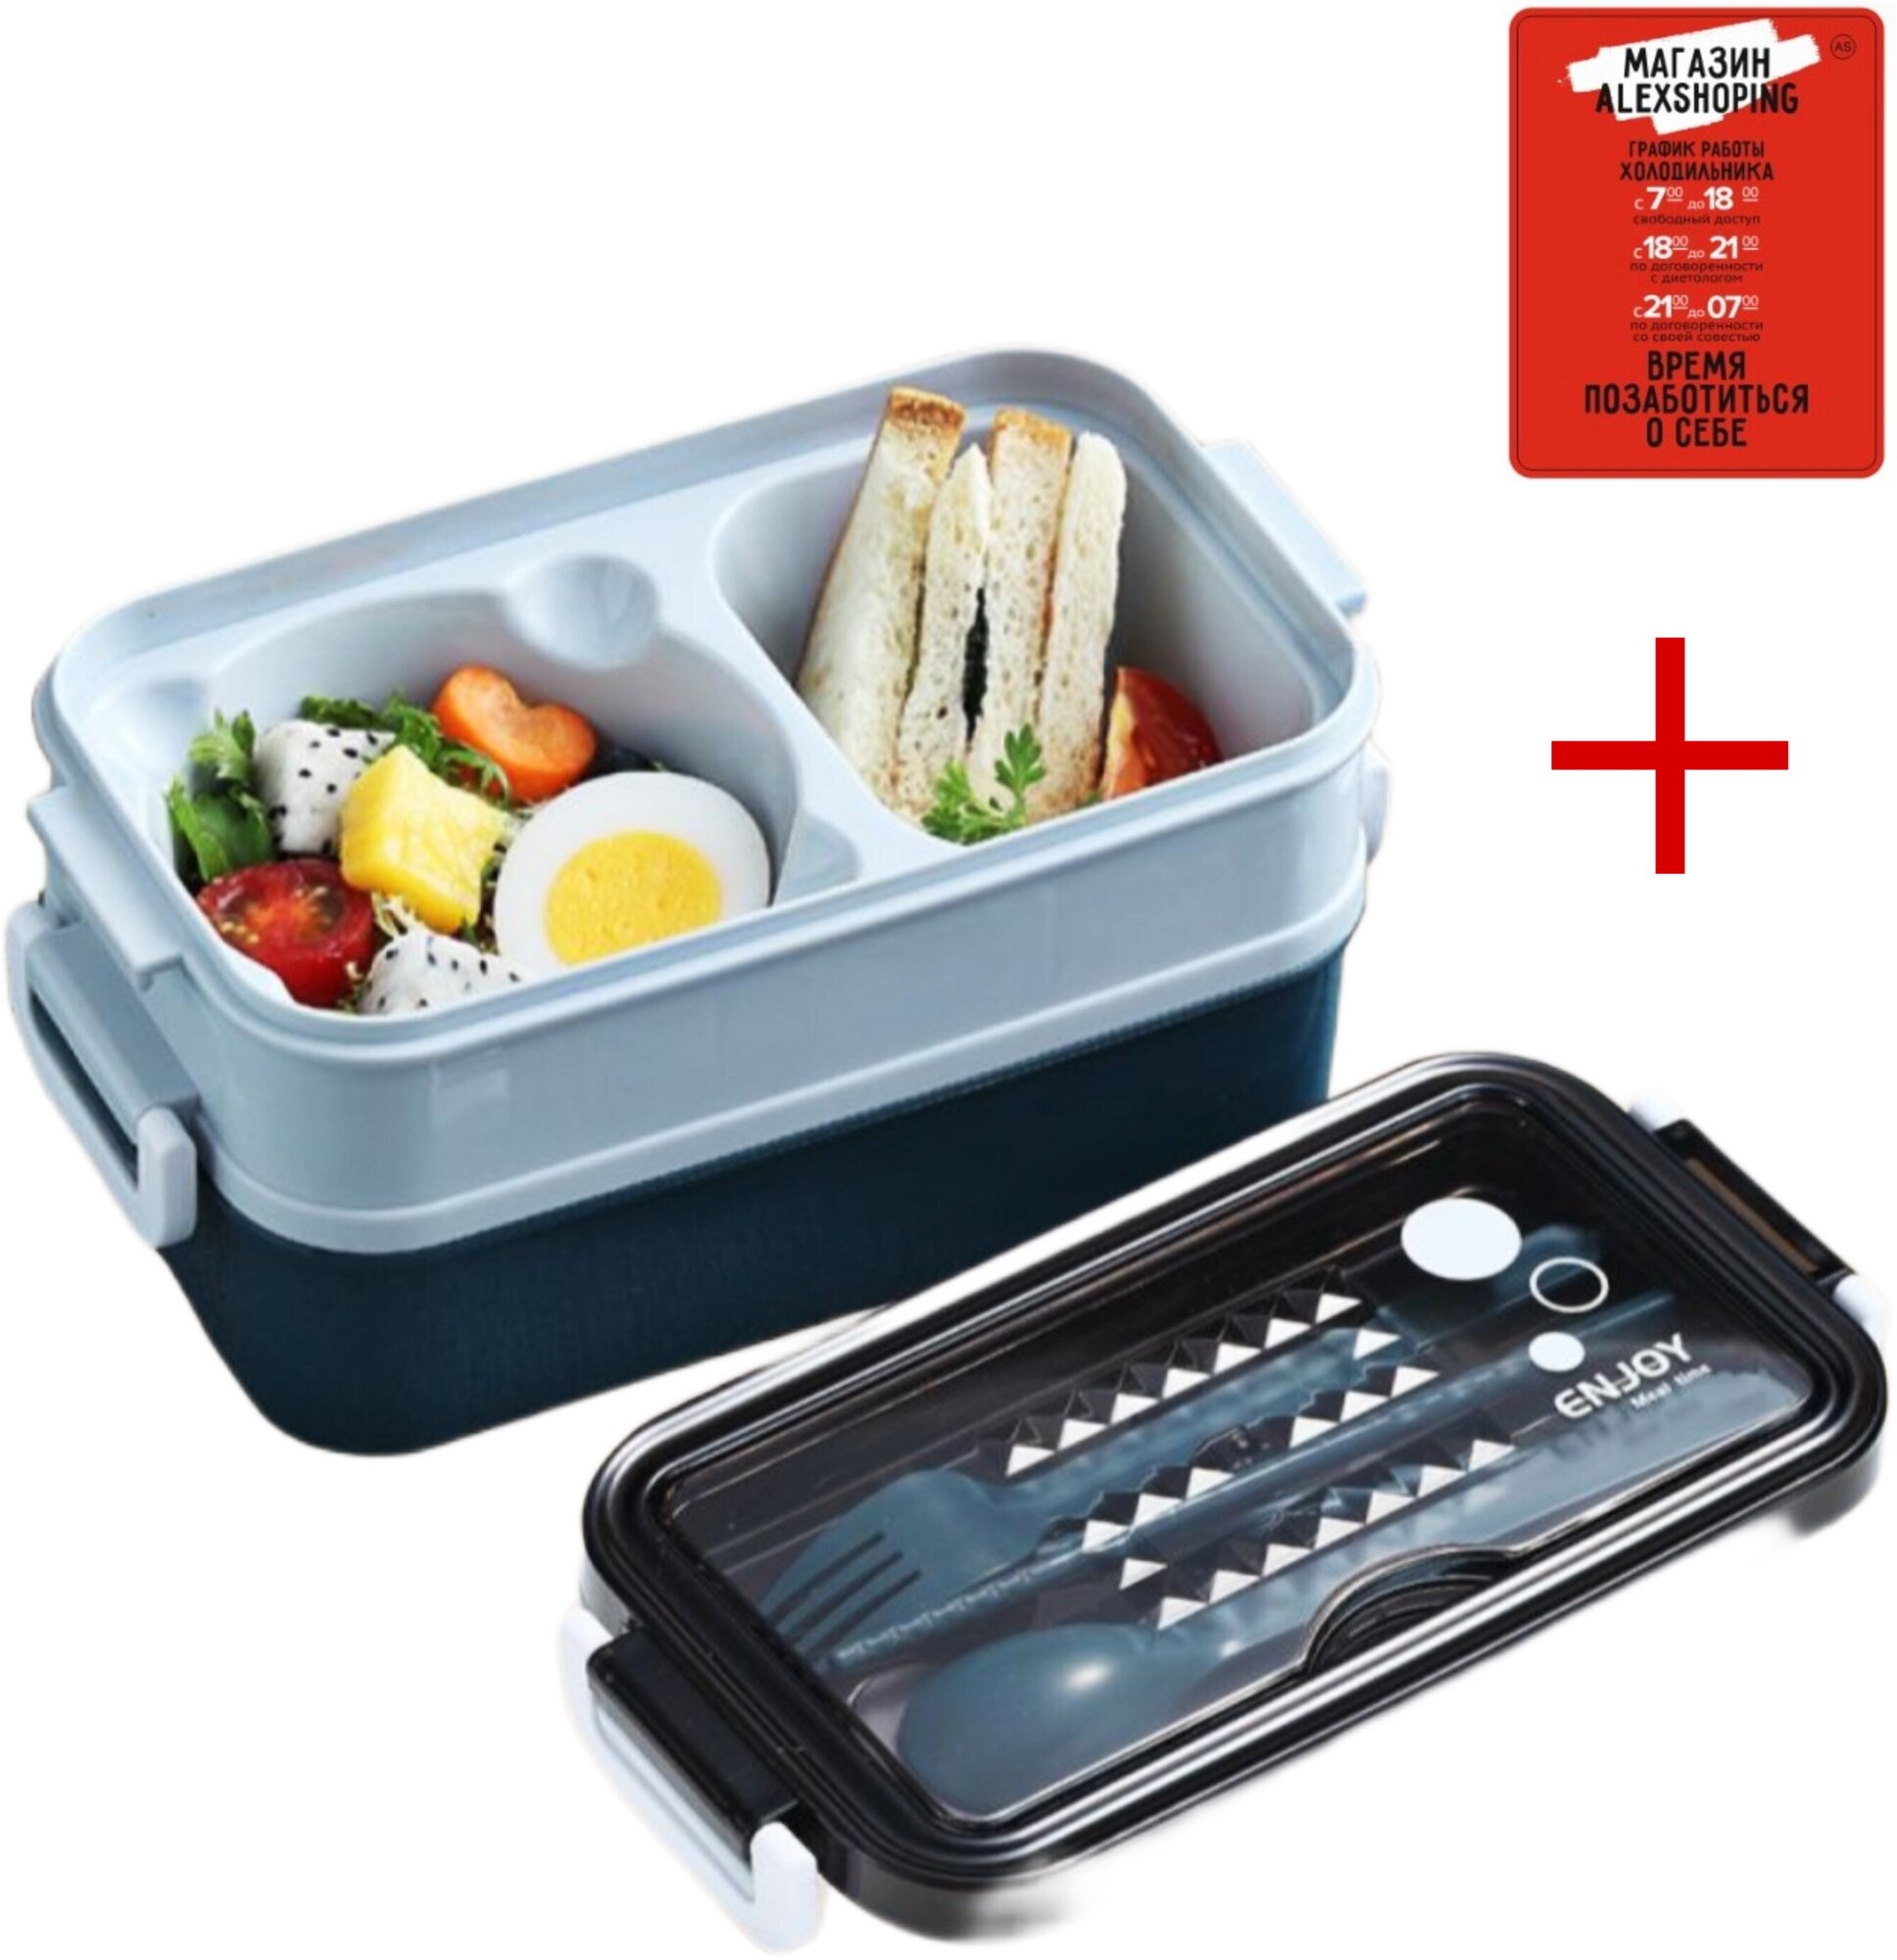 Контейнер для еды,пластиковый ланч бокс с приборами + Авторский магнит AlexShoping на холодильник - фотография № 1